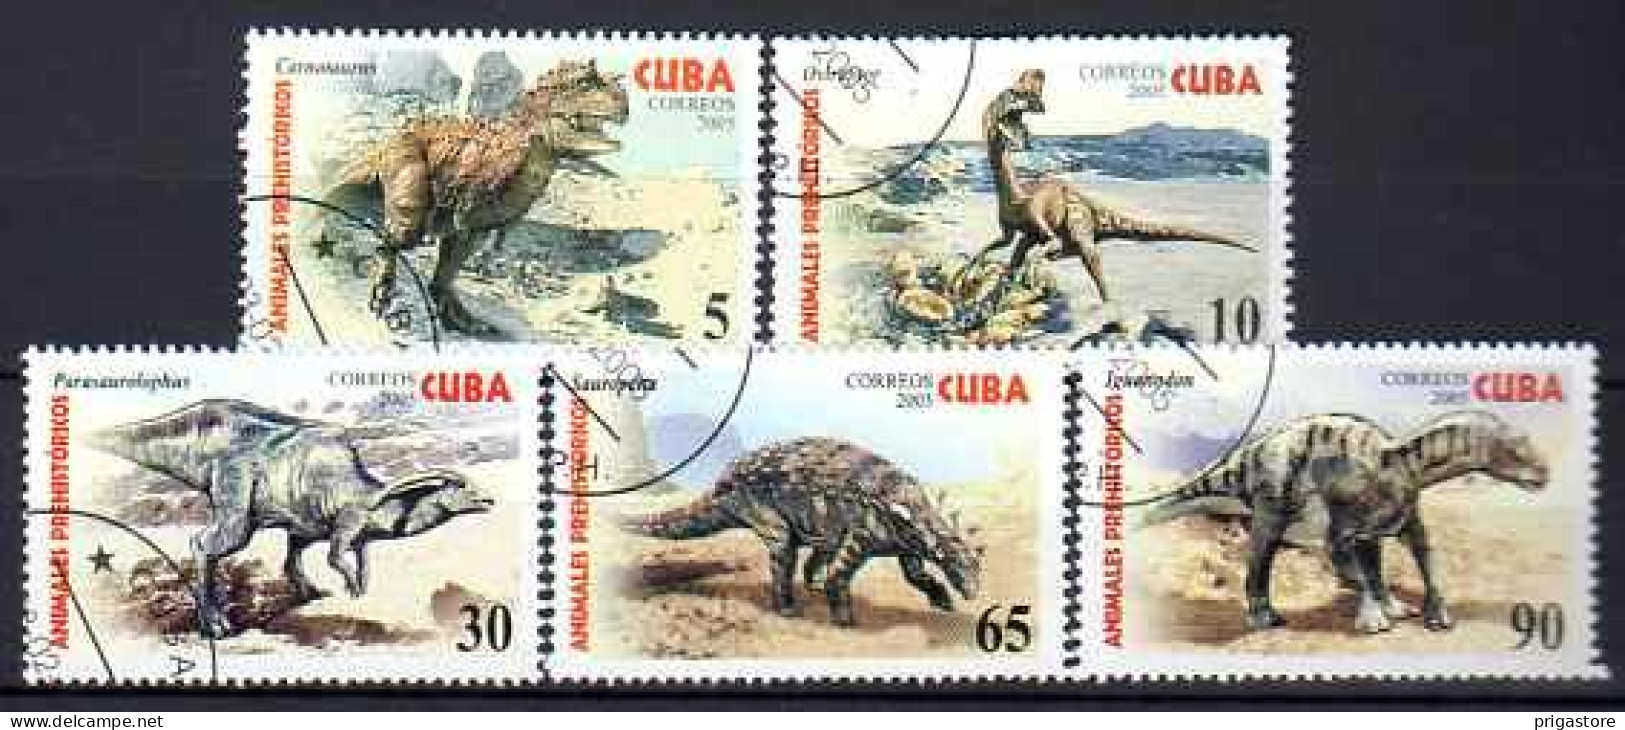 Cuba 2005 Animaux Préhistoriques (10) Yvert N° 4225 à 4229 Oblitéré Used - Used Stamps